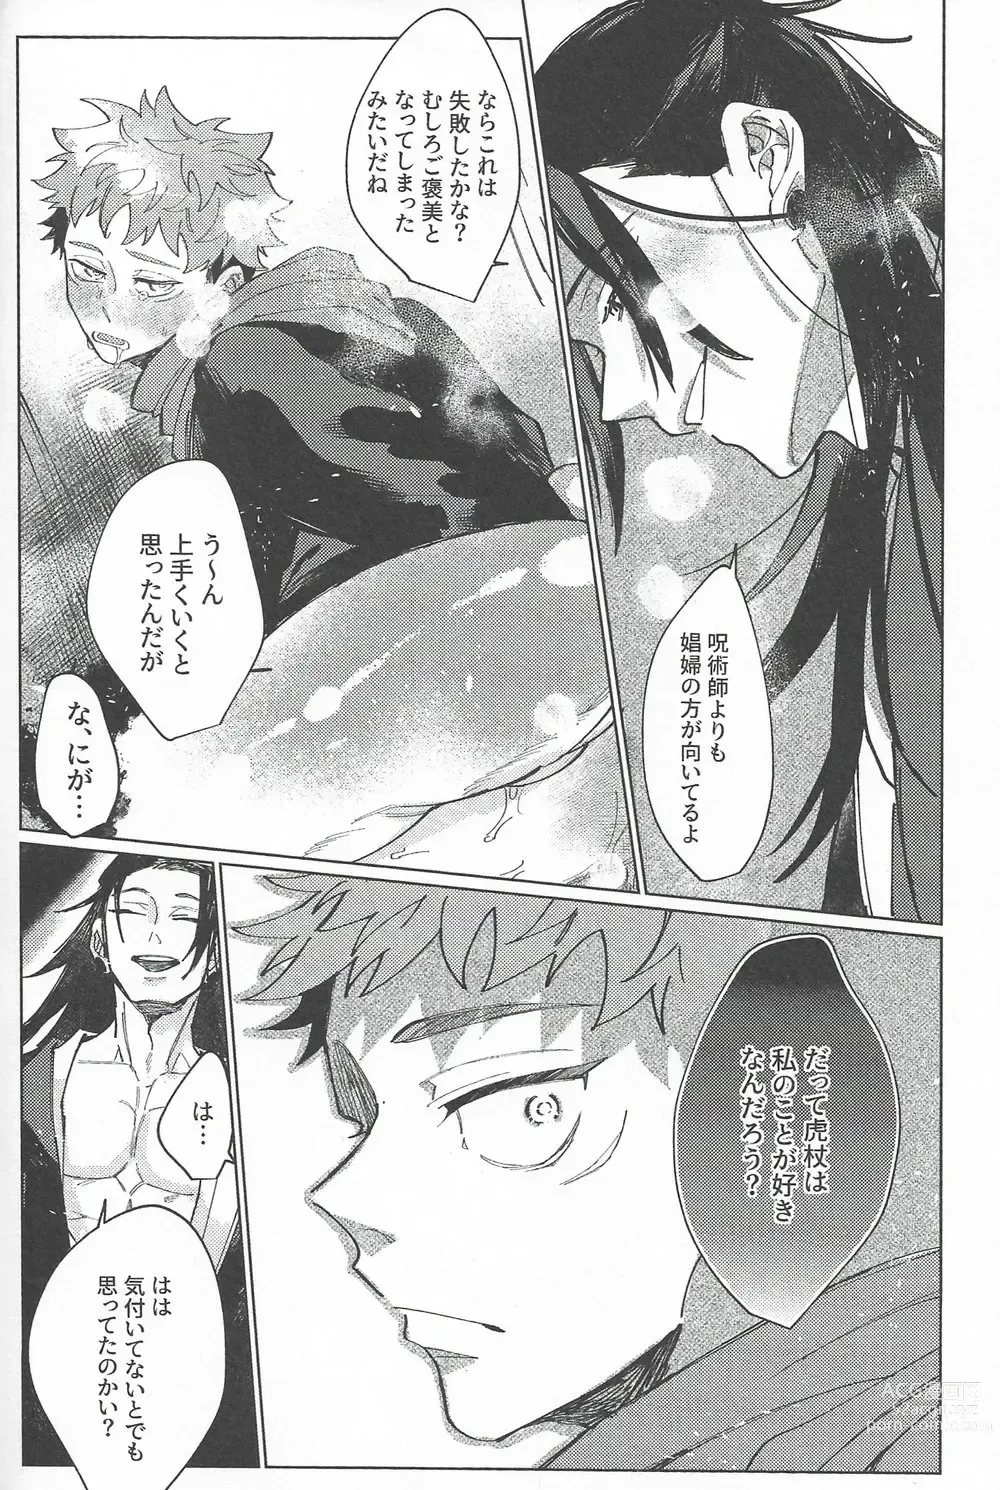 Page 63 of doujinshi Rakuen no Niwa